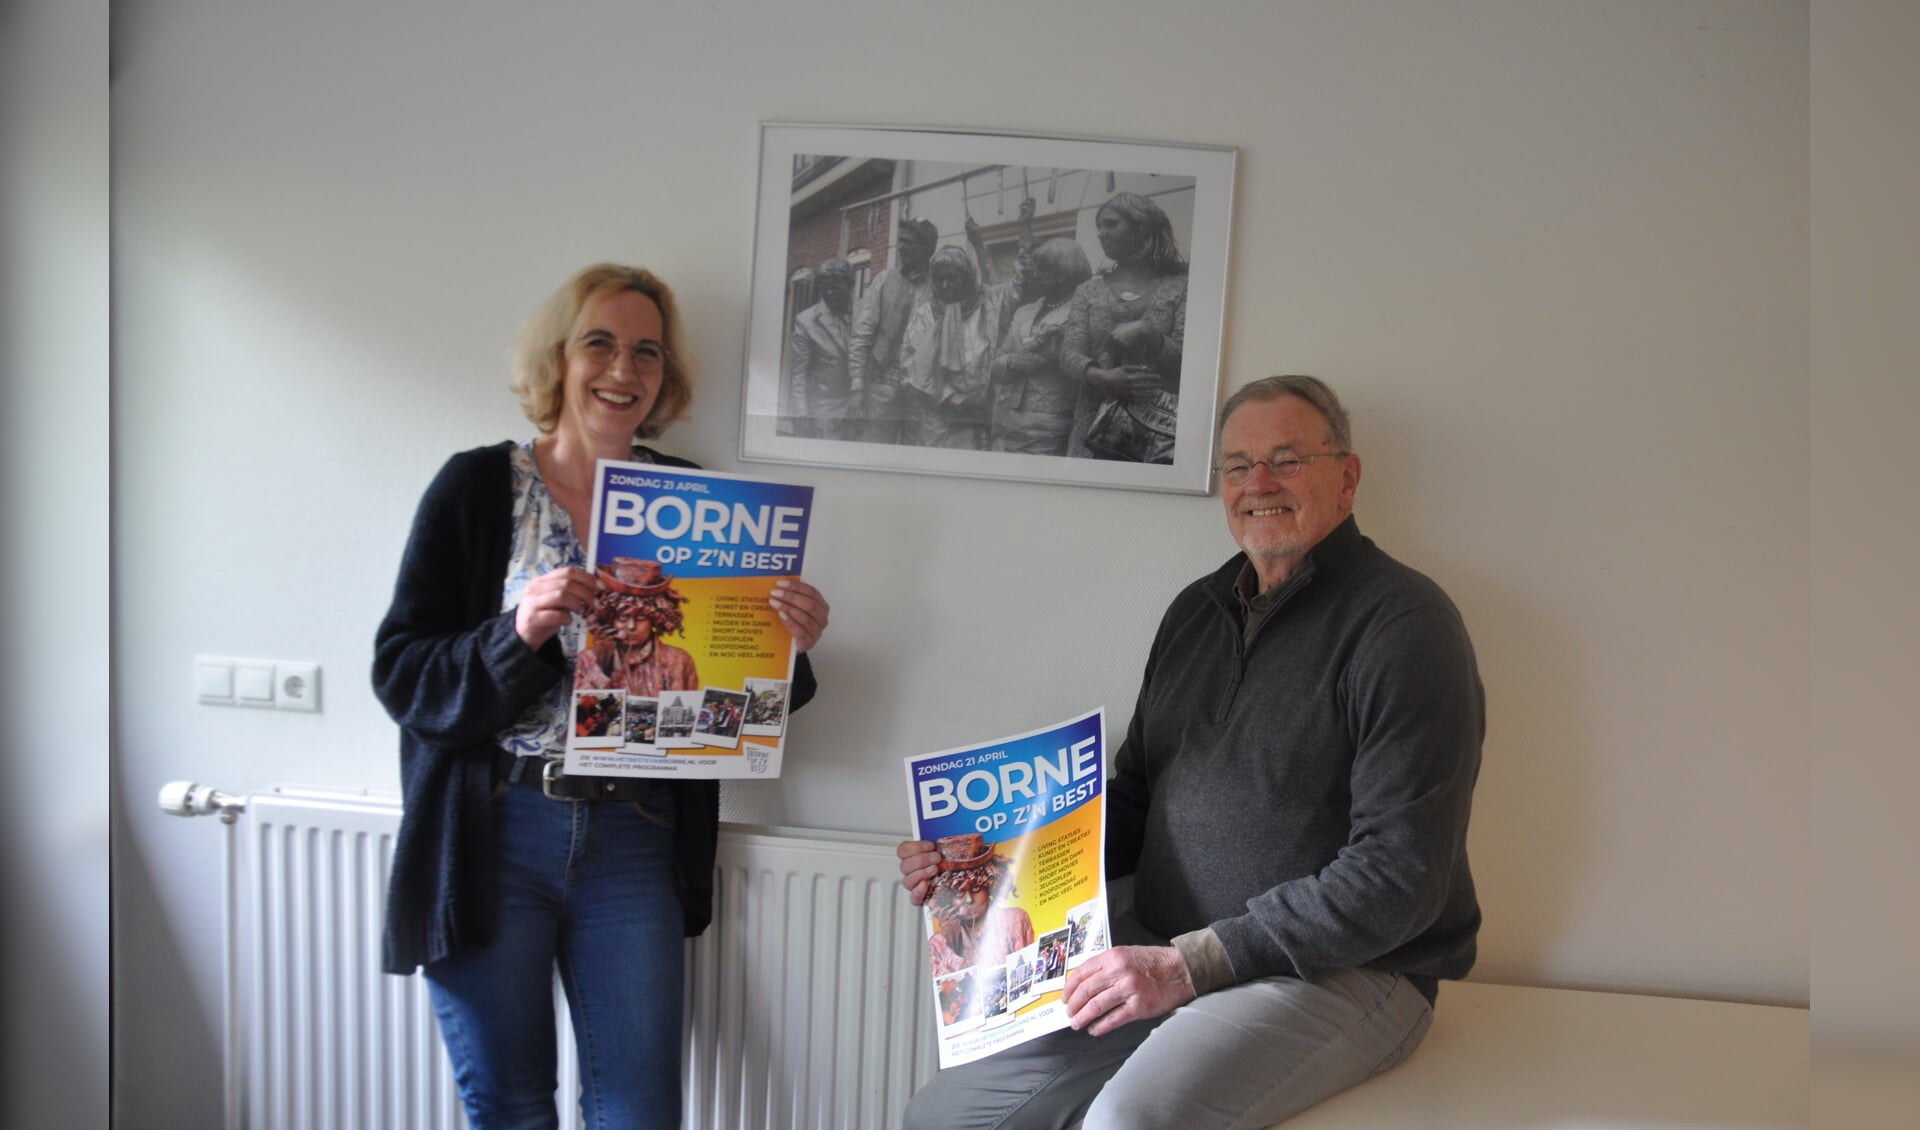 Anke Jonathans en Bertil Meyer met de poster van Borne op z'n Best.